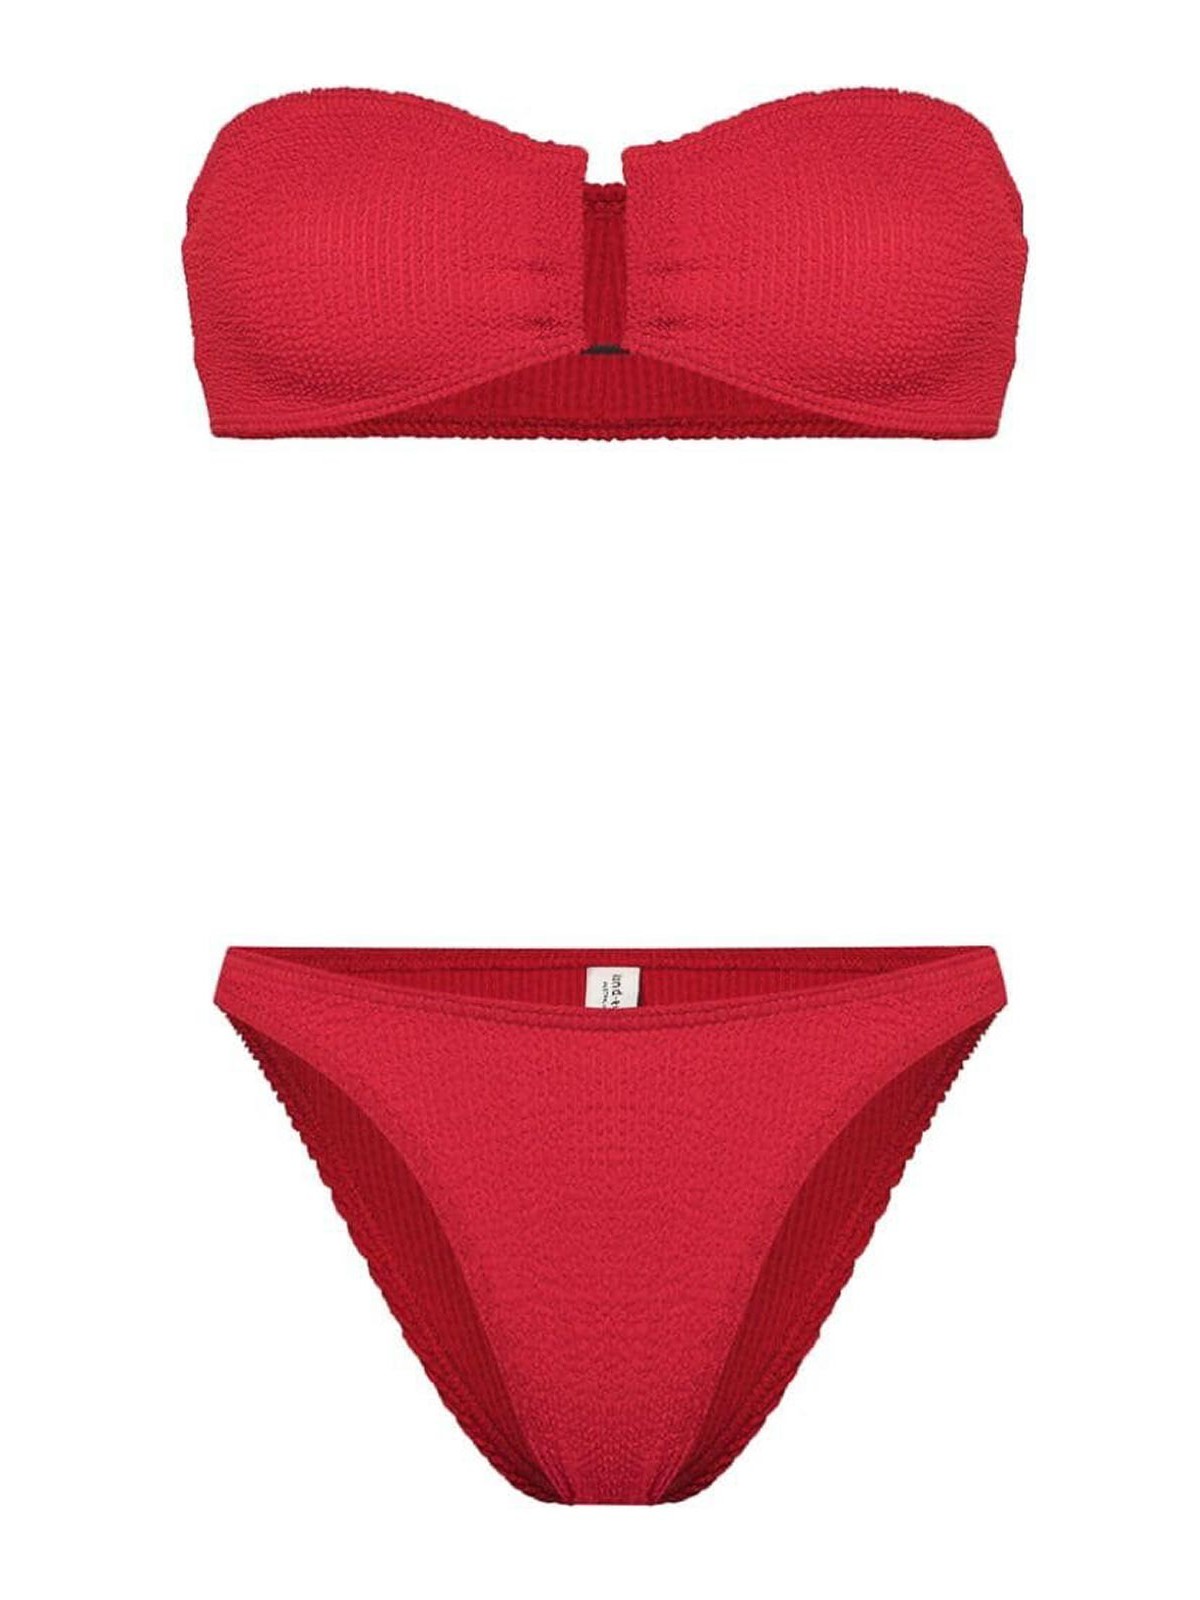 Bondeye Bound Red Bikini